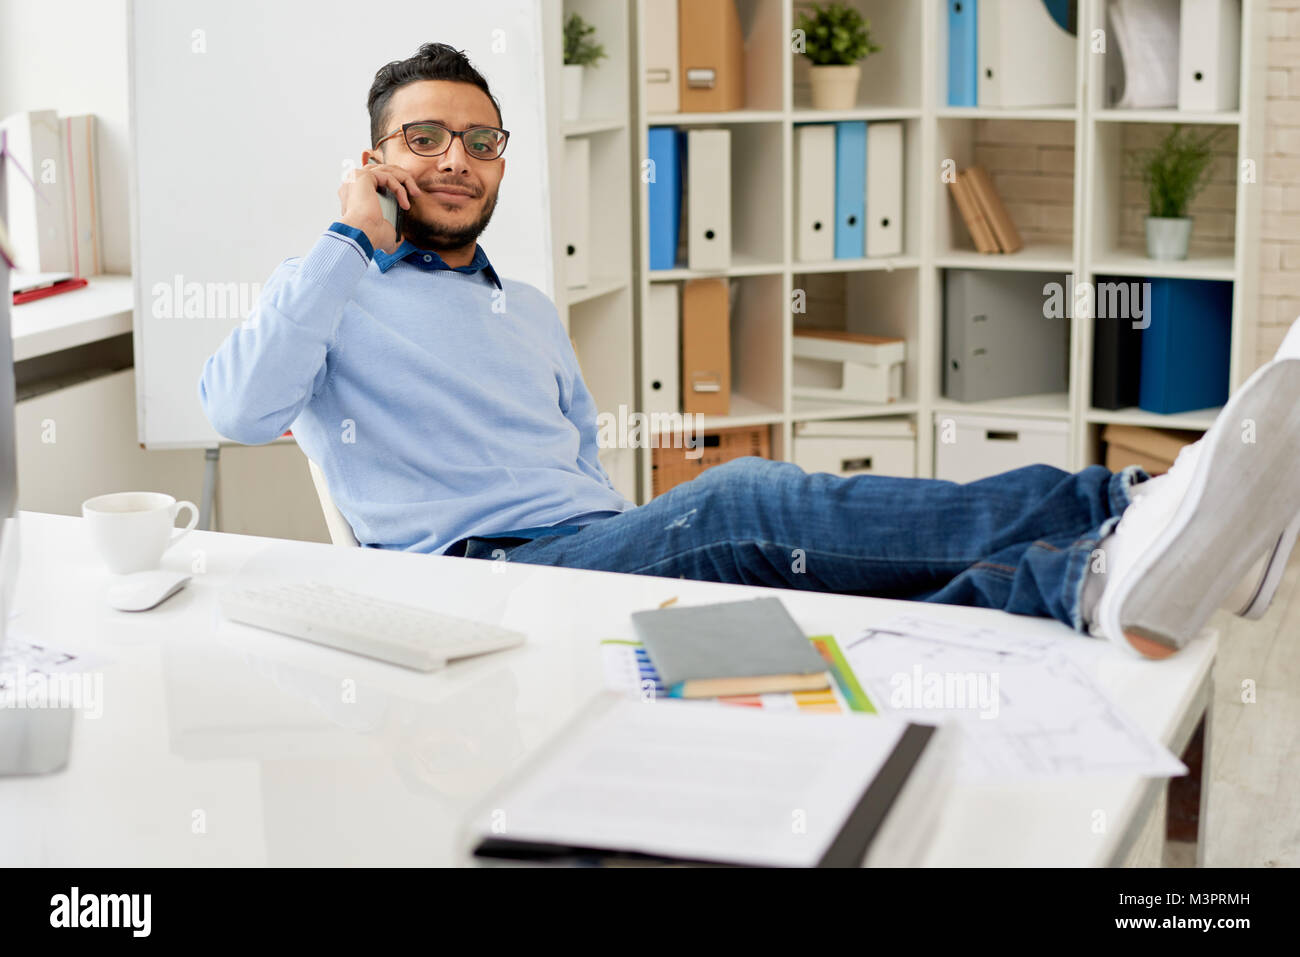 Jeune homme du Moyen-Orient se reposent au lieu de travail Banque D'Images